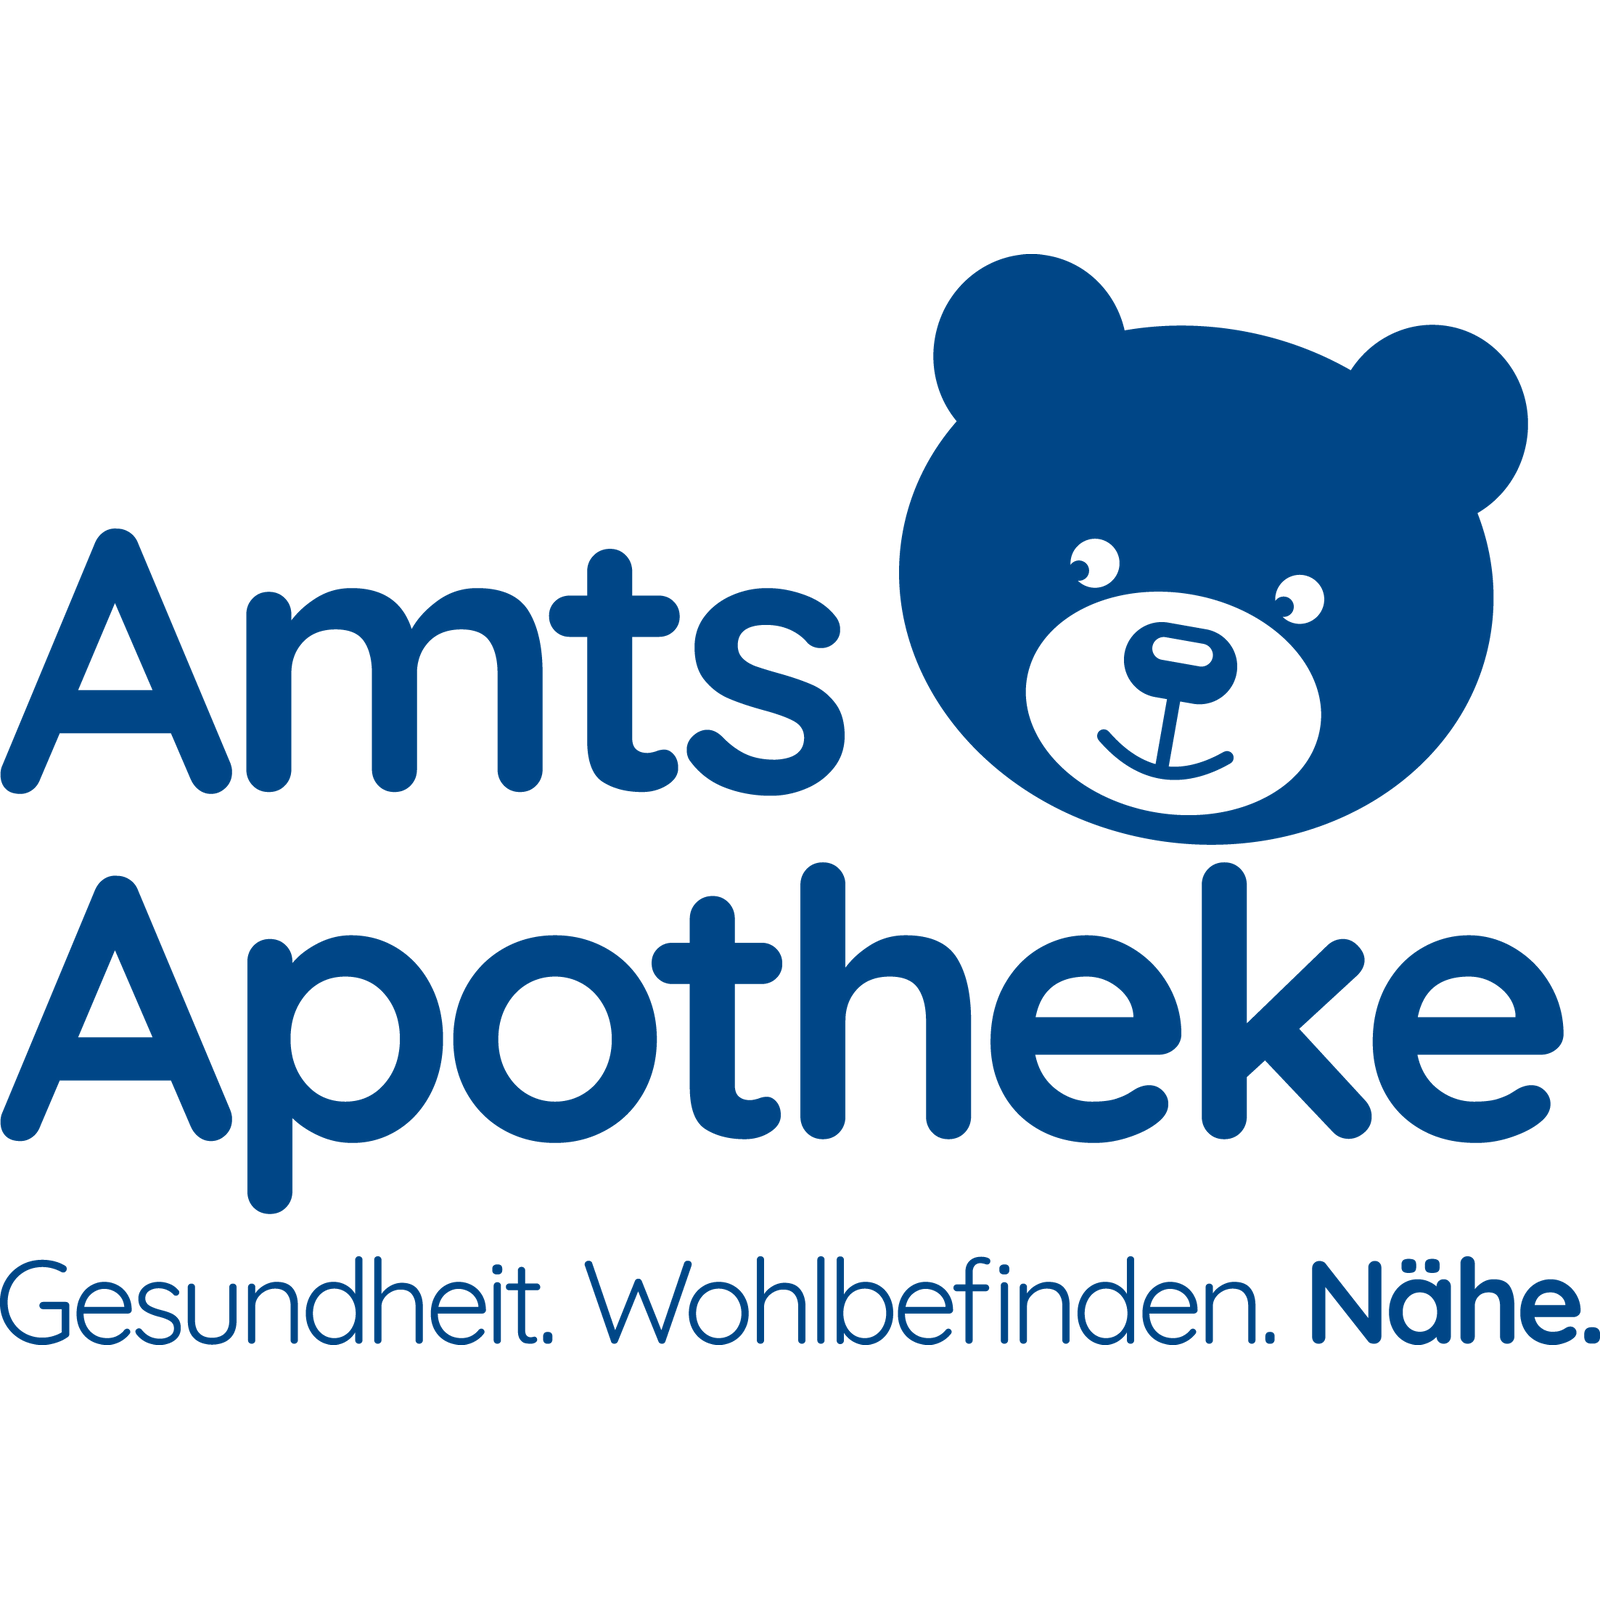 Logo der Amts-Apotheke